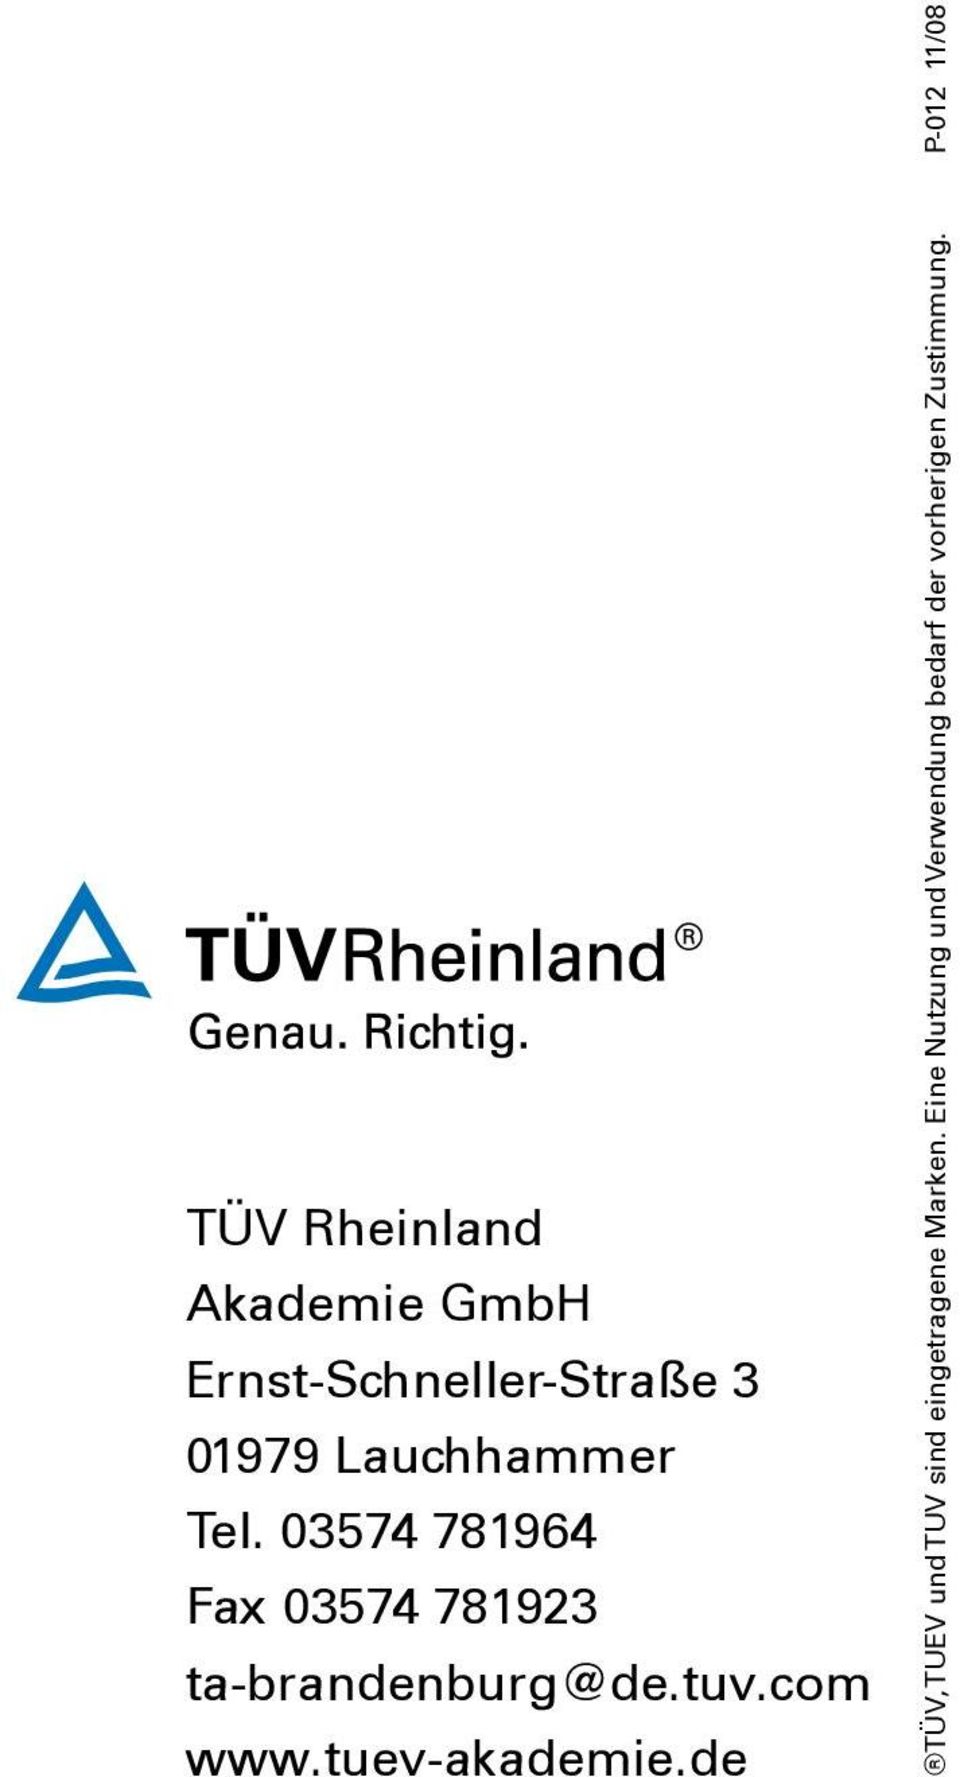 tuv.com www.tuev-akademie.